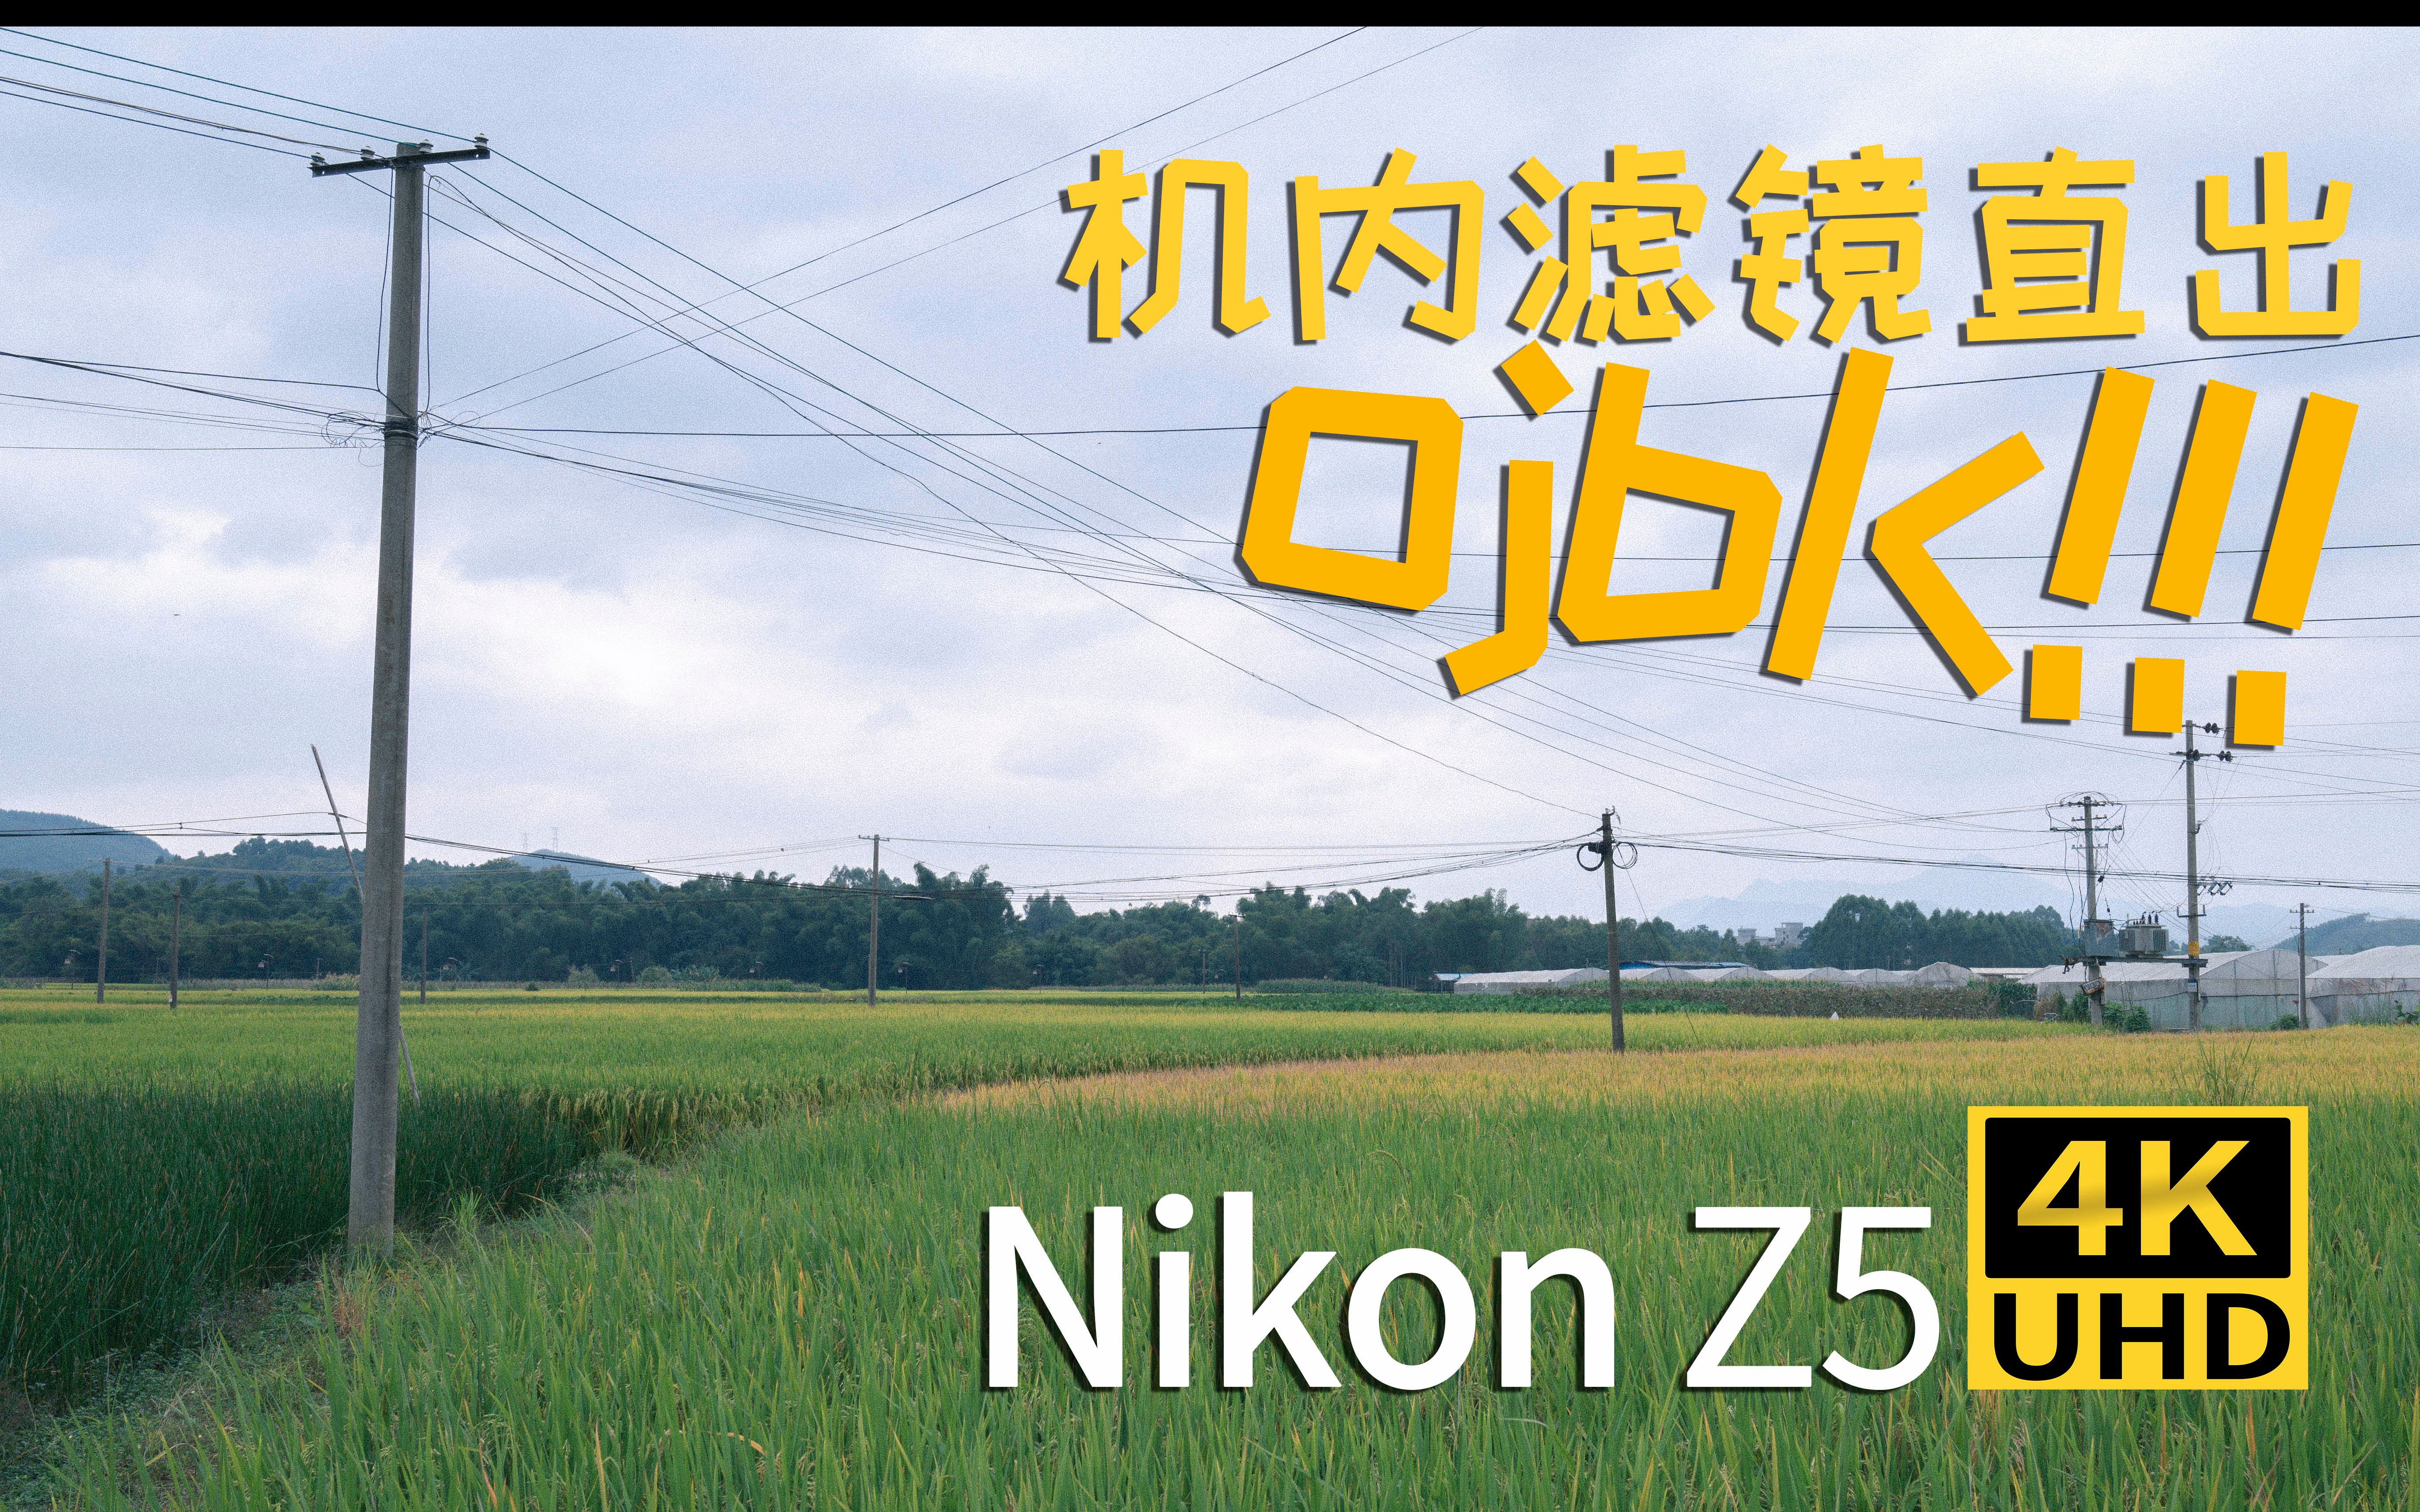 【尼康Nikon Z5】尼康Z5 4K画质 滤镜直出 挺香的